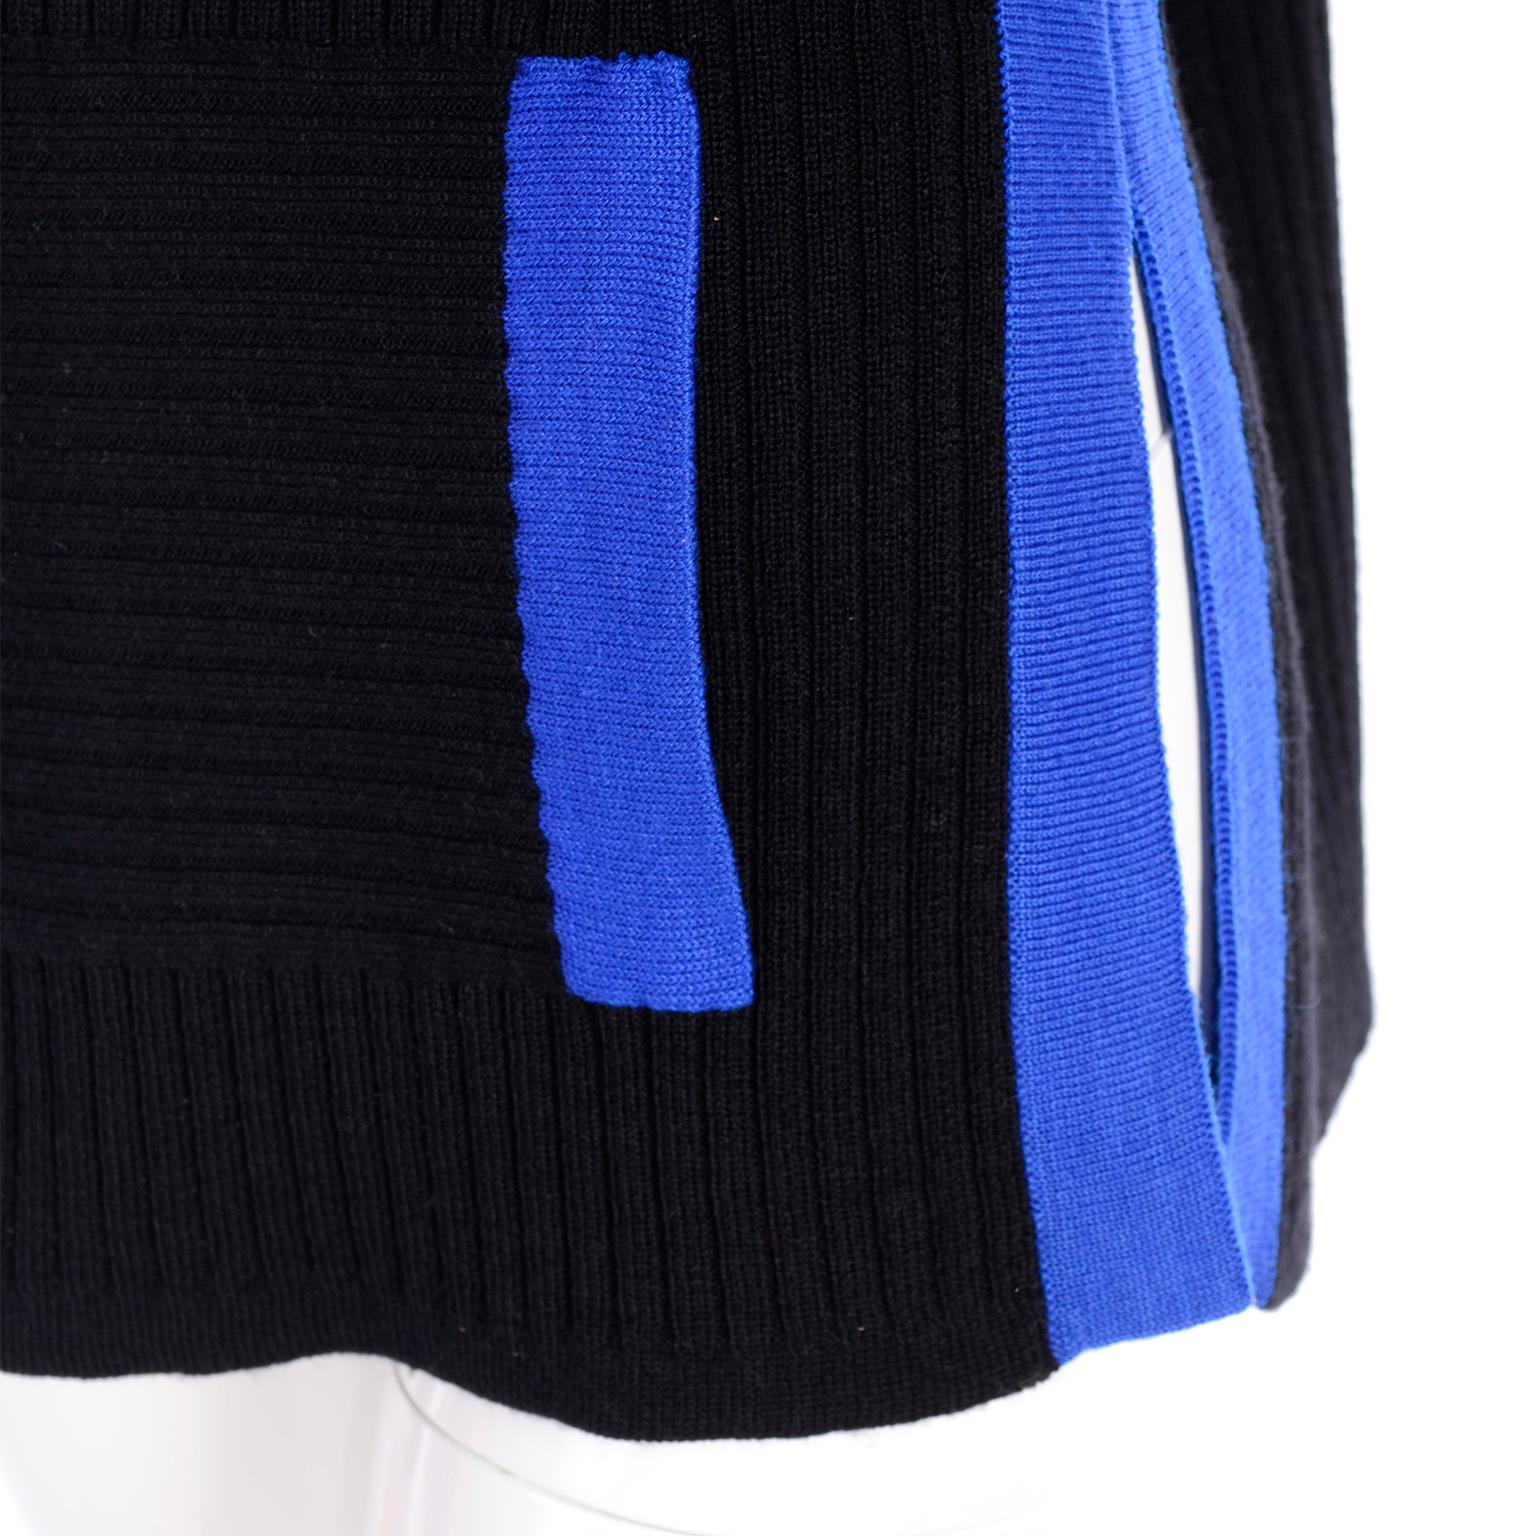 Yves Saint Laurent Pullover-Oberteil aus schwarzer Wolle mit blauem Besatz für Damen oder Herren